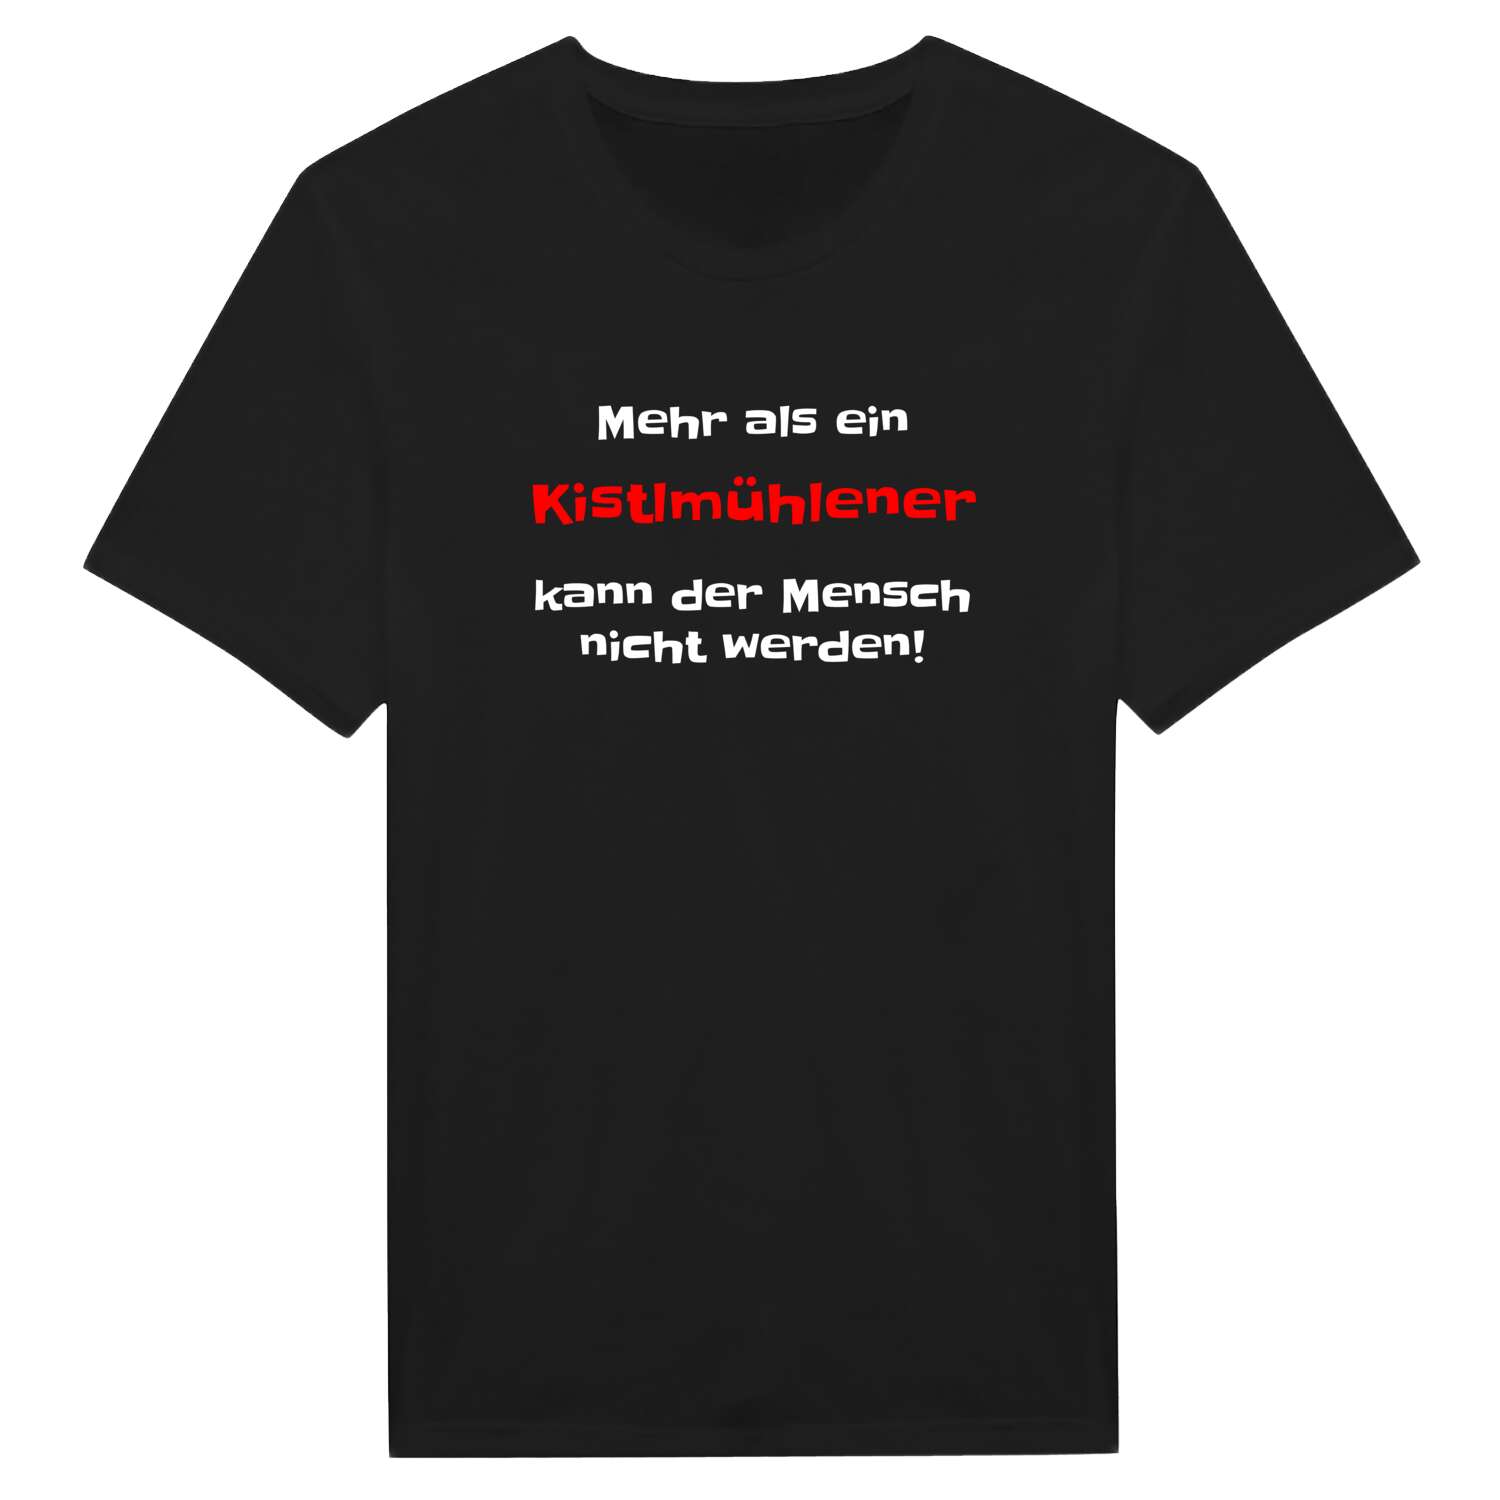 Kistlmühle T-Shirt »Mehr als ein«